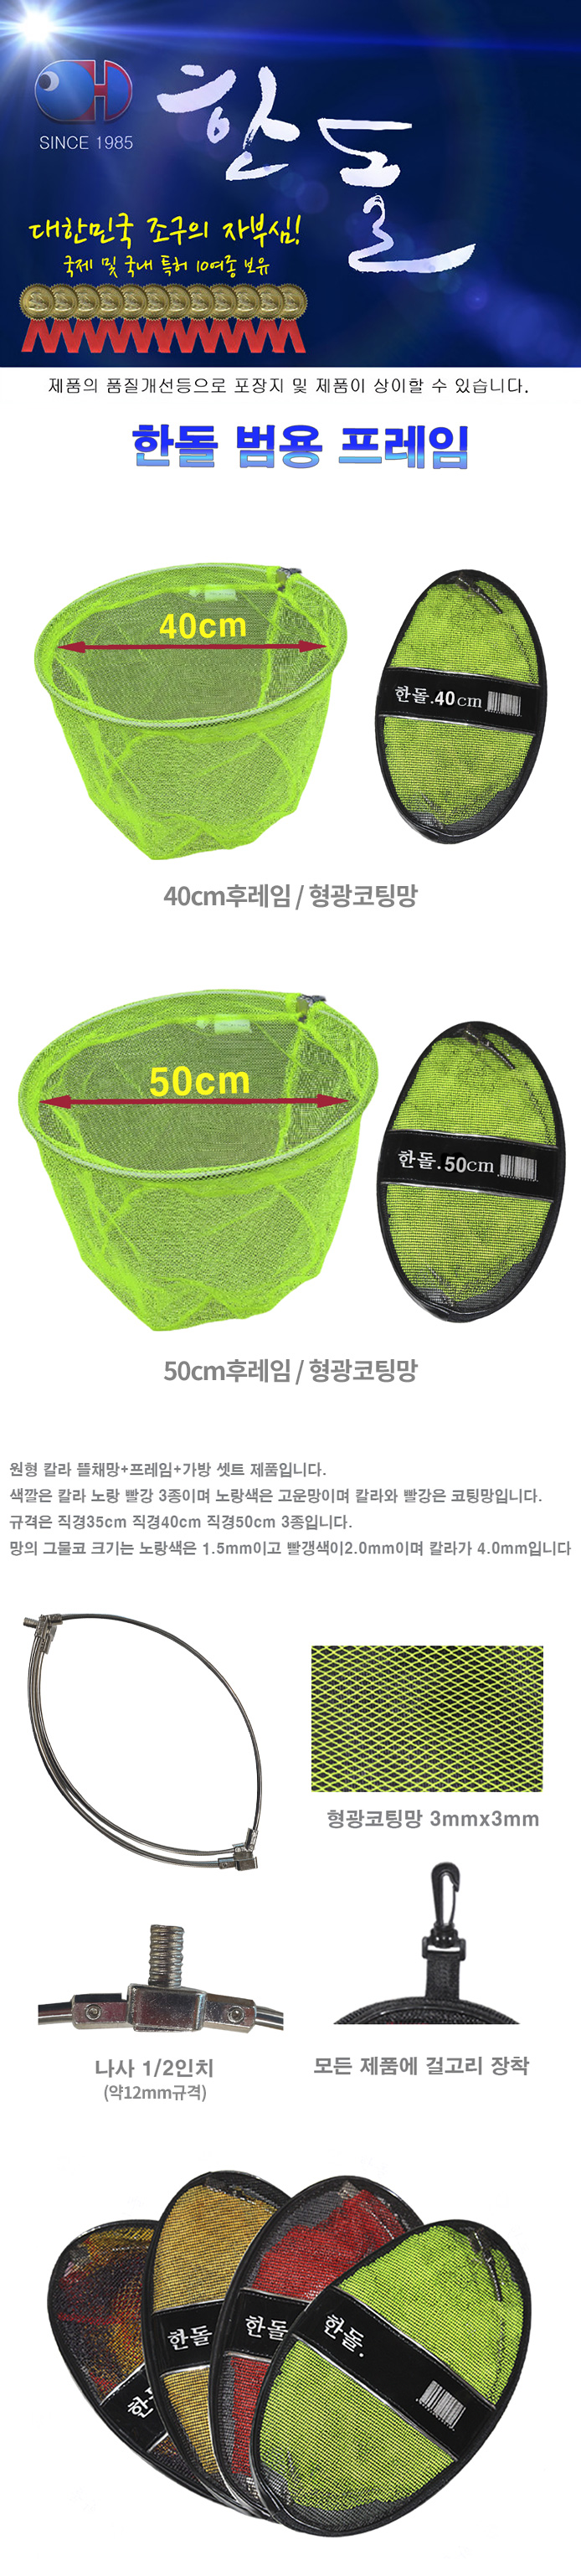 한돌 범용 후레임+형광코팅망 40cm/50cm